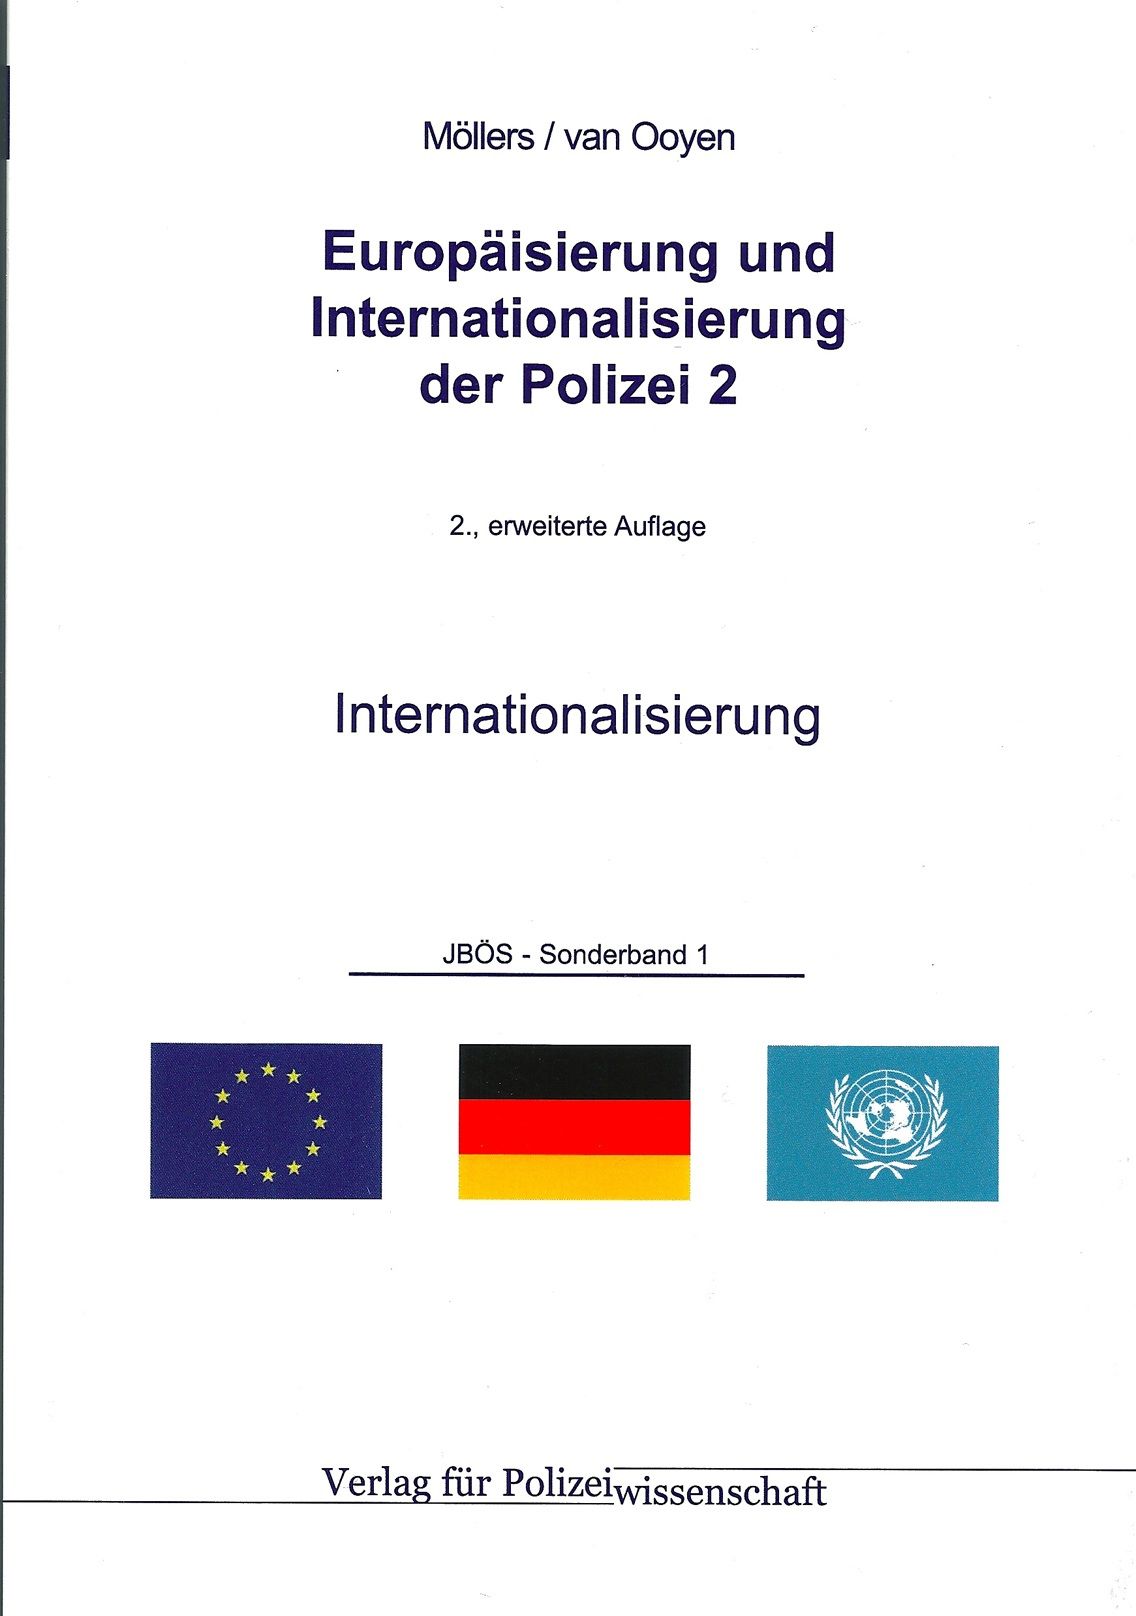 Europäisierung und Internationalisierung der Polizei 2: Internationalisierung